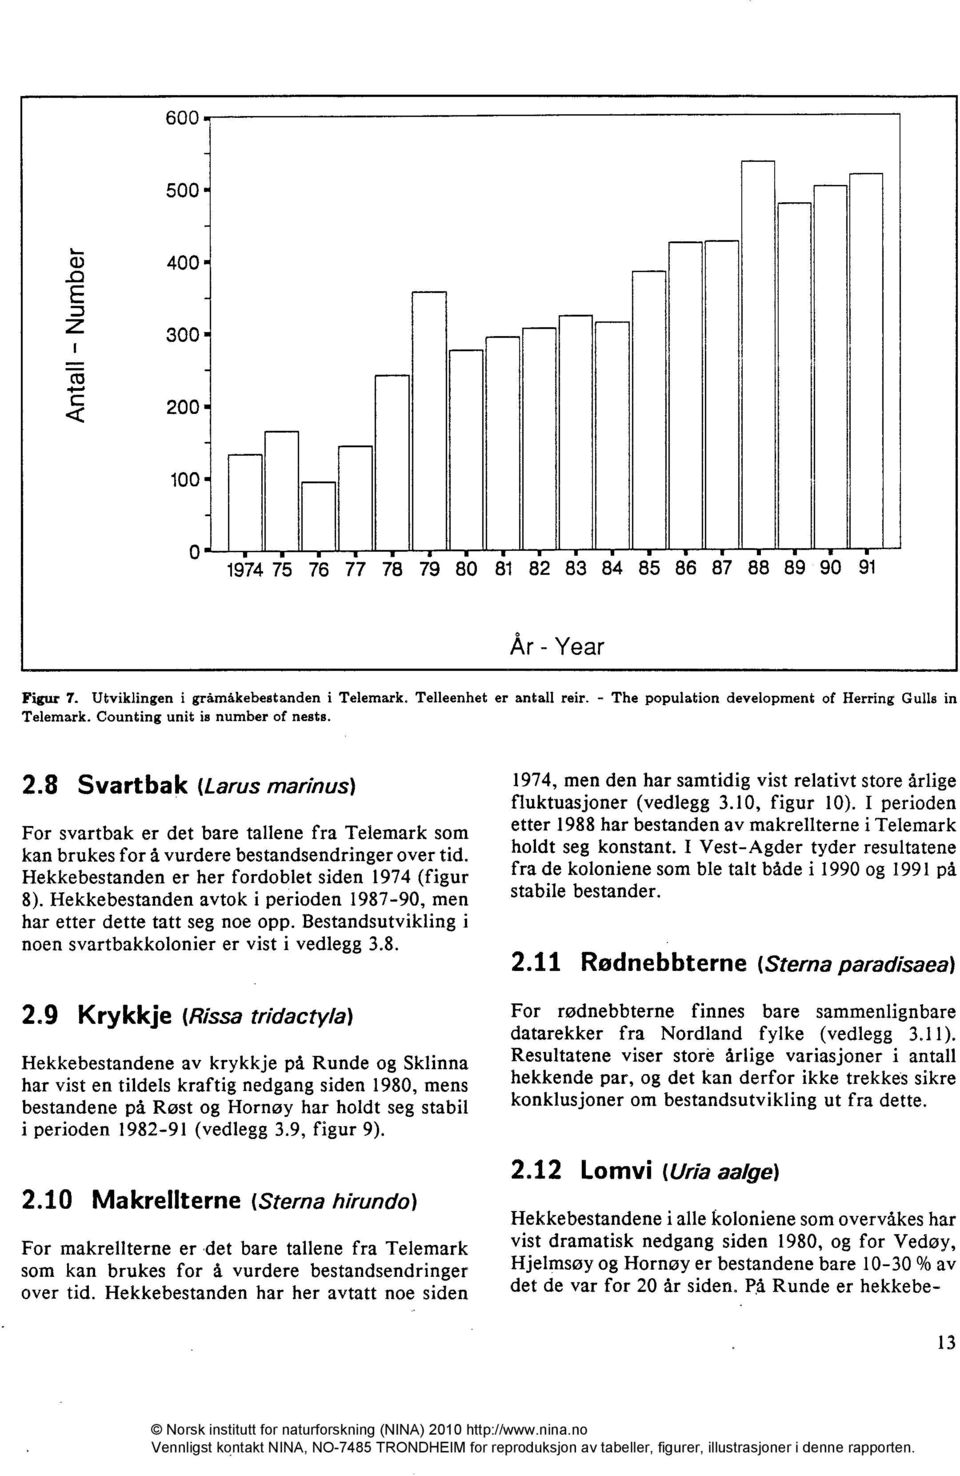 8 Svartbak (Larus marinus) For svartbak er det bare tallene fra Telemark som kan brukes for å vurdere bestandsendringer over tid. Hekkebestanden er her fordoblet siden 1974 (figur 8).